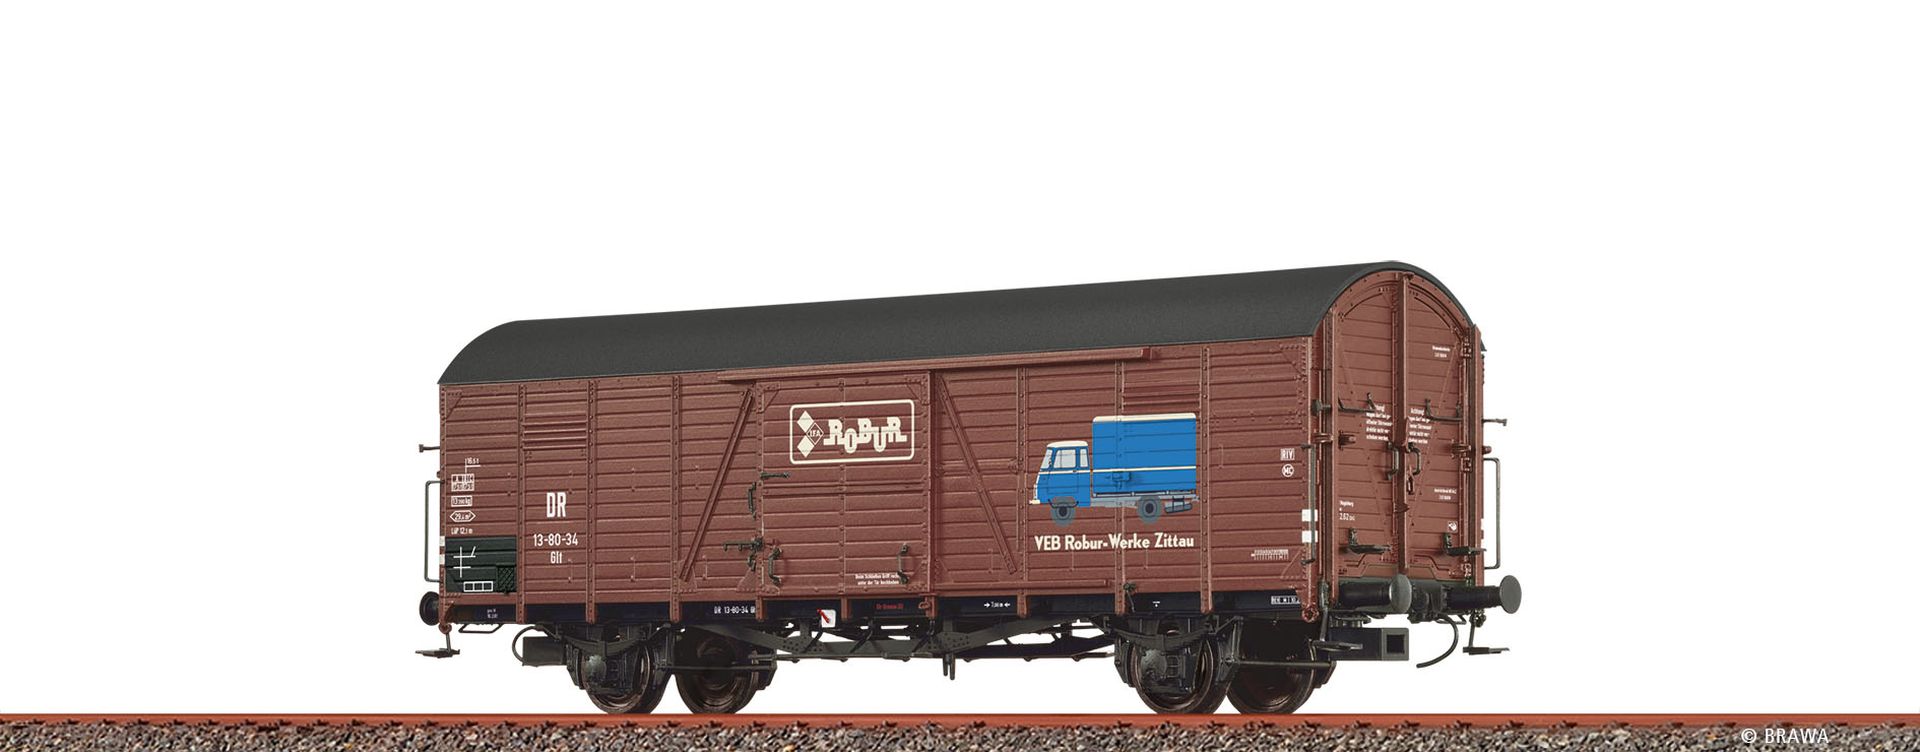 Brawa 50480 - Gedeckter Güterwagen Glr 23 'Robur', DR, Ep.III